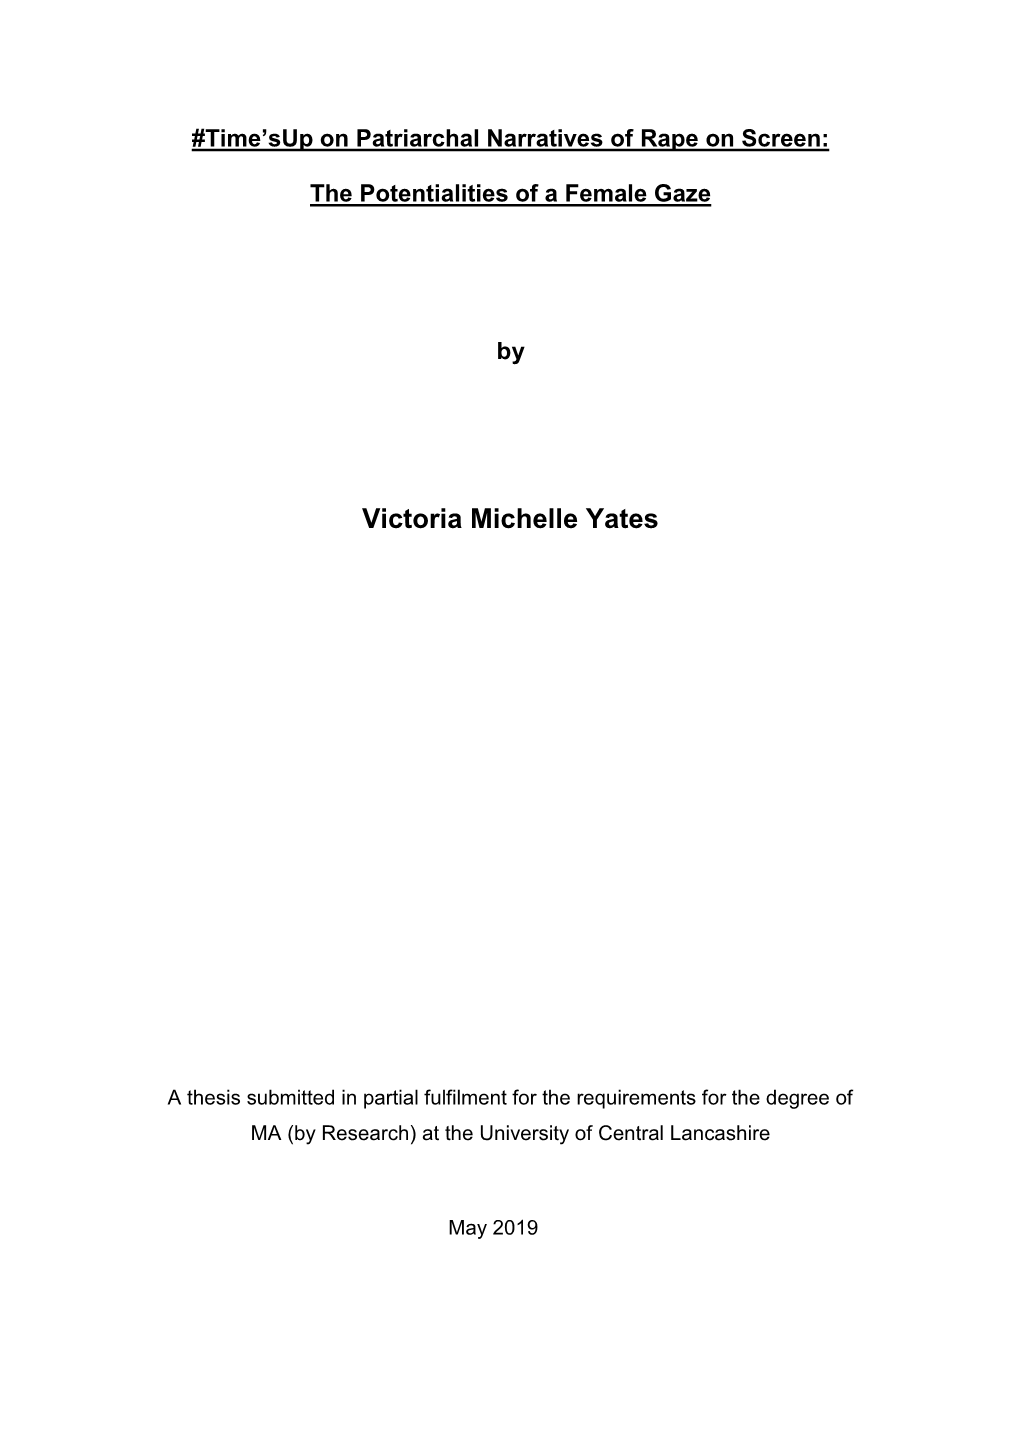 Victoria Michelle Yates